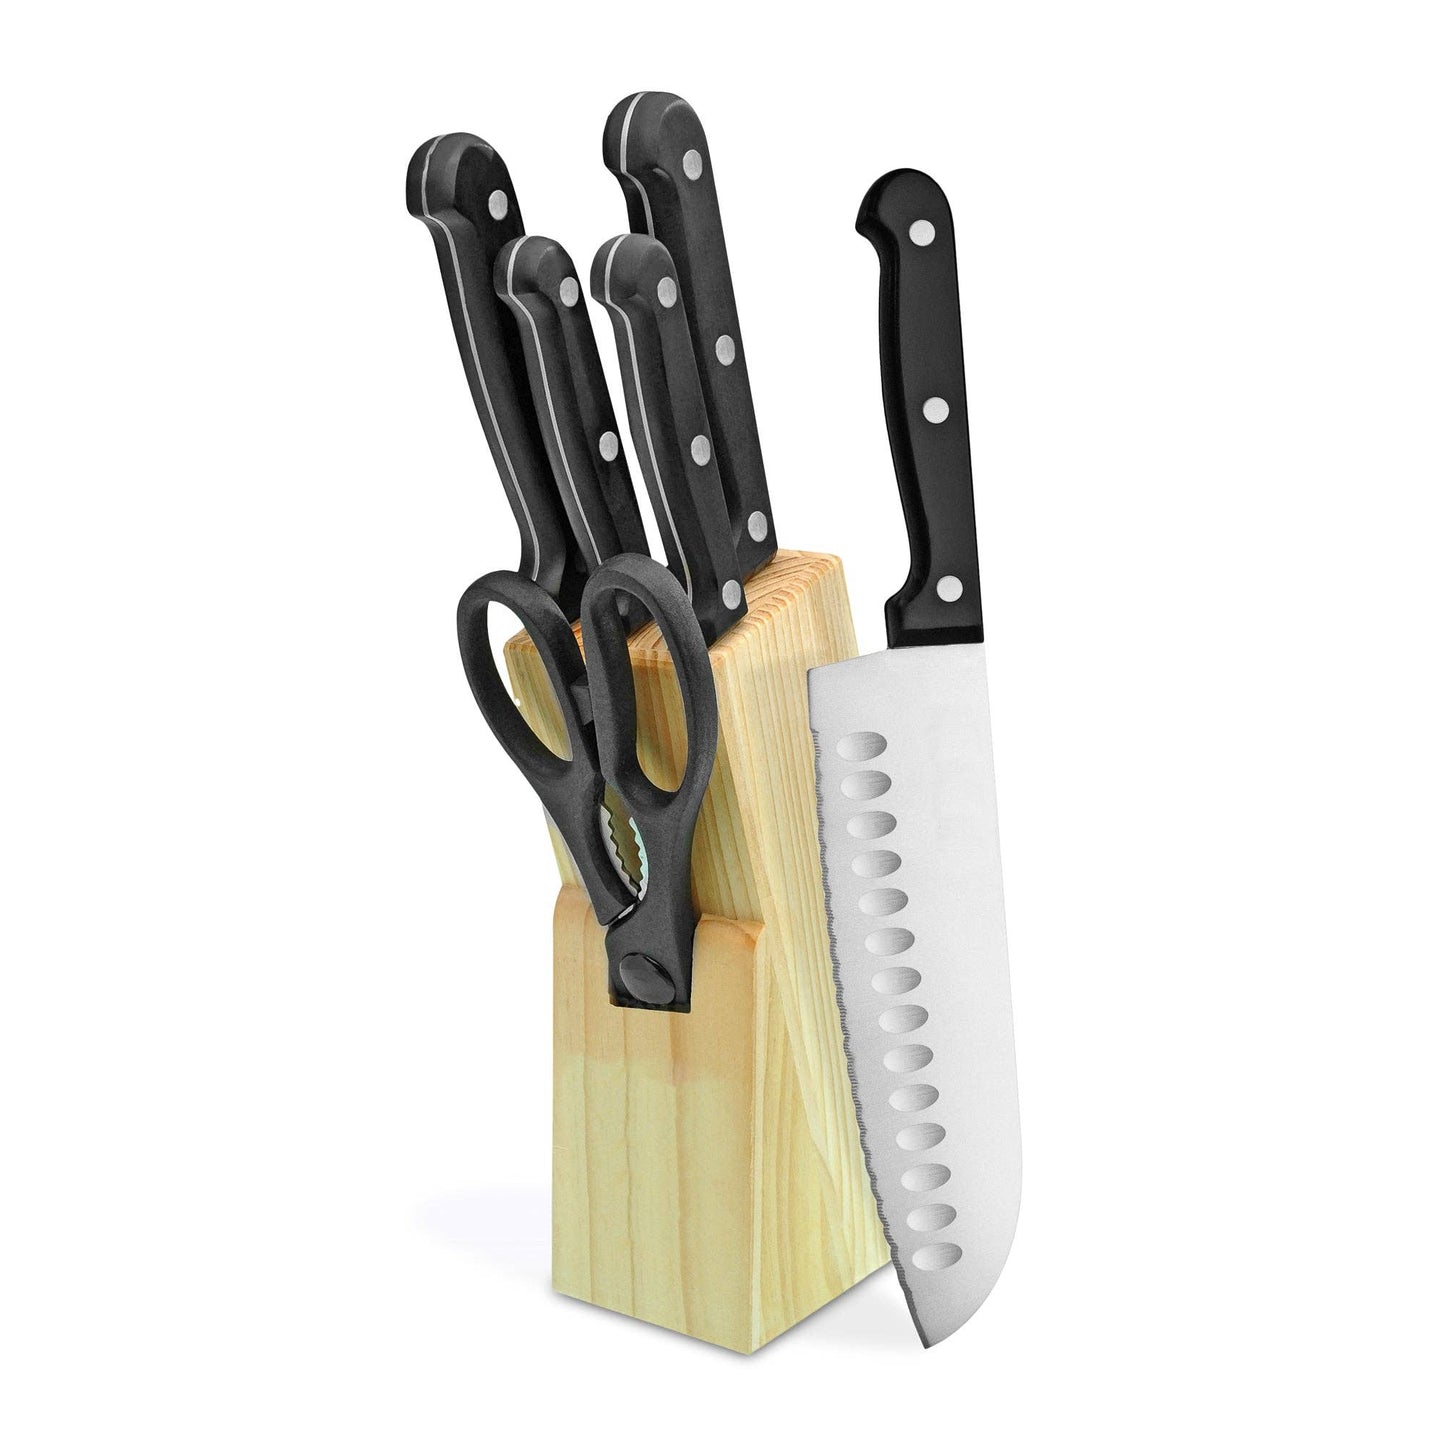 7 Piece Knife Block Cutlery Set in Black